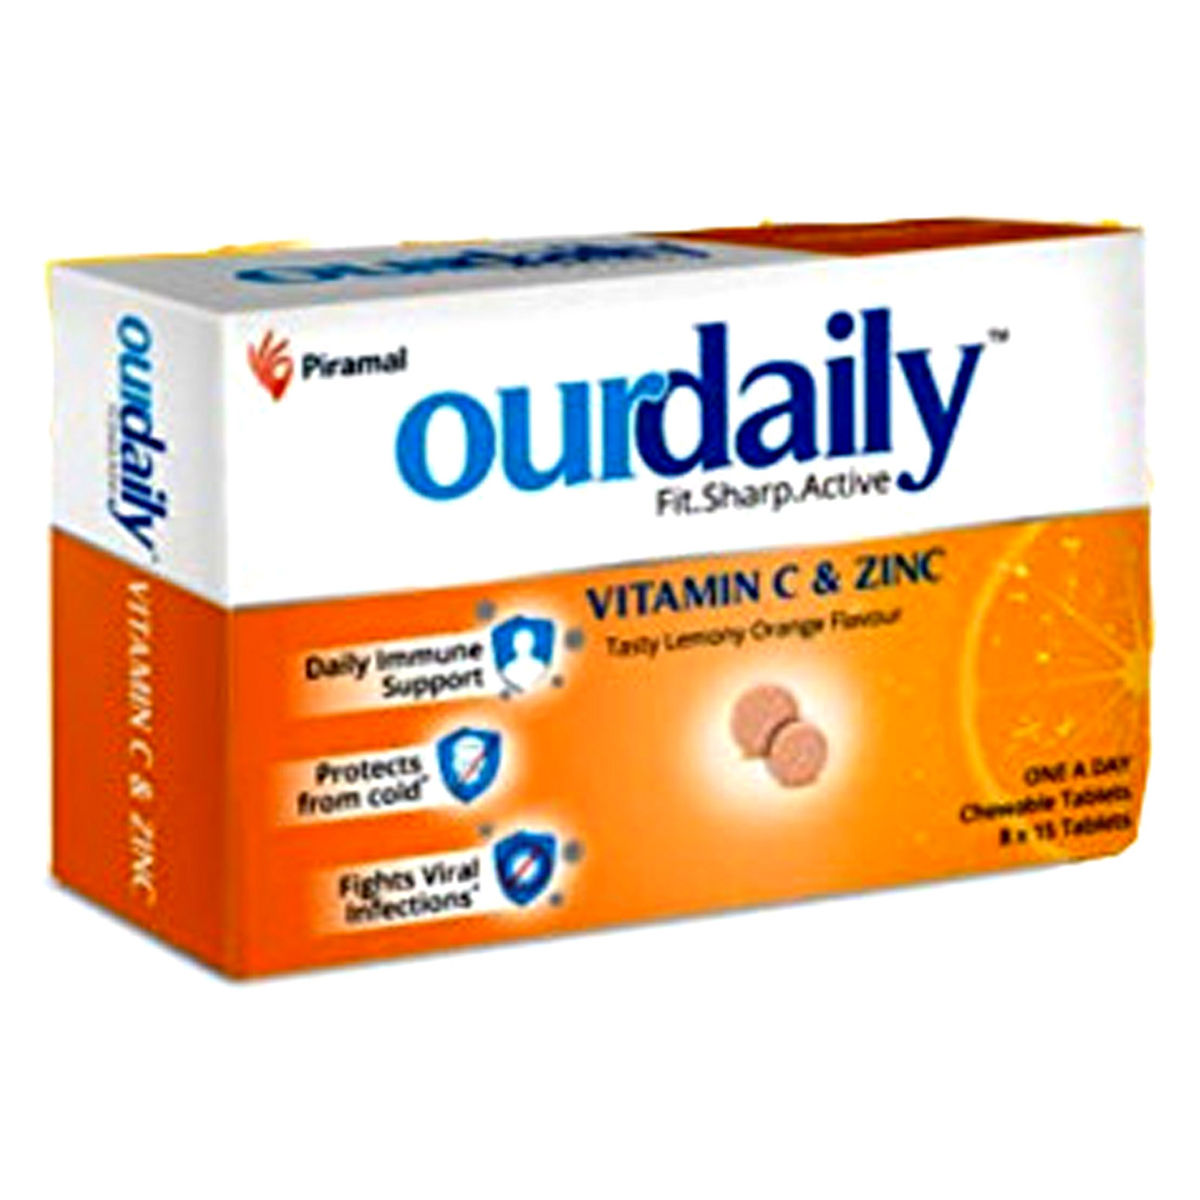 Buy Ourdaily Vitamin C & Zinc Lemon & Orange Flavour, 15 Tablets Online